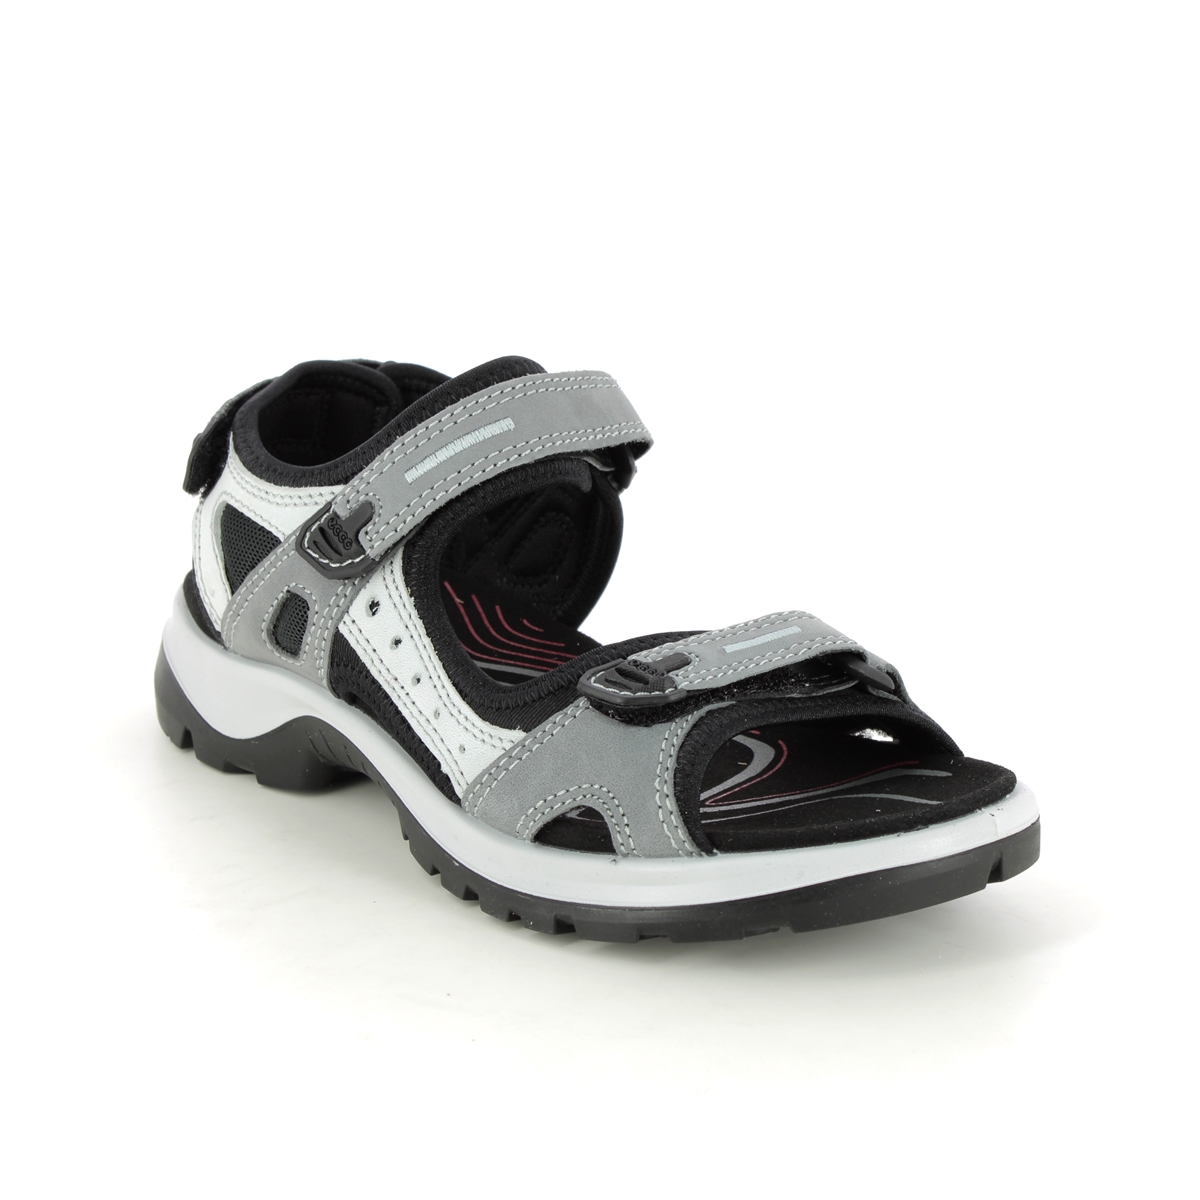 Ecco Offroad Lady Grey Nubuck Womens Walking Sandals 069563-02244 In Size 38 In Plain Grey Nubuck